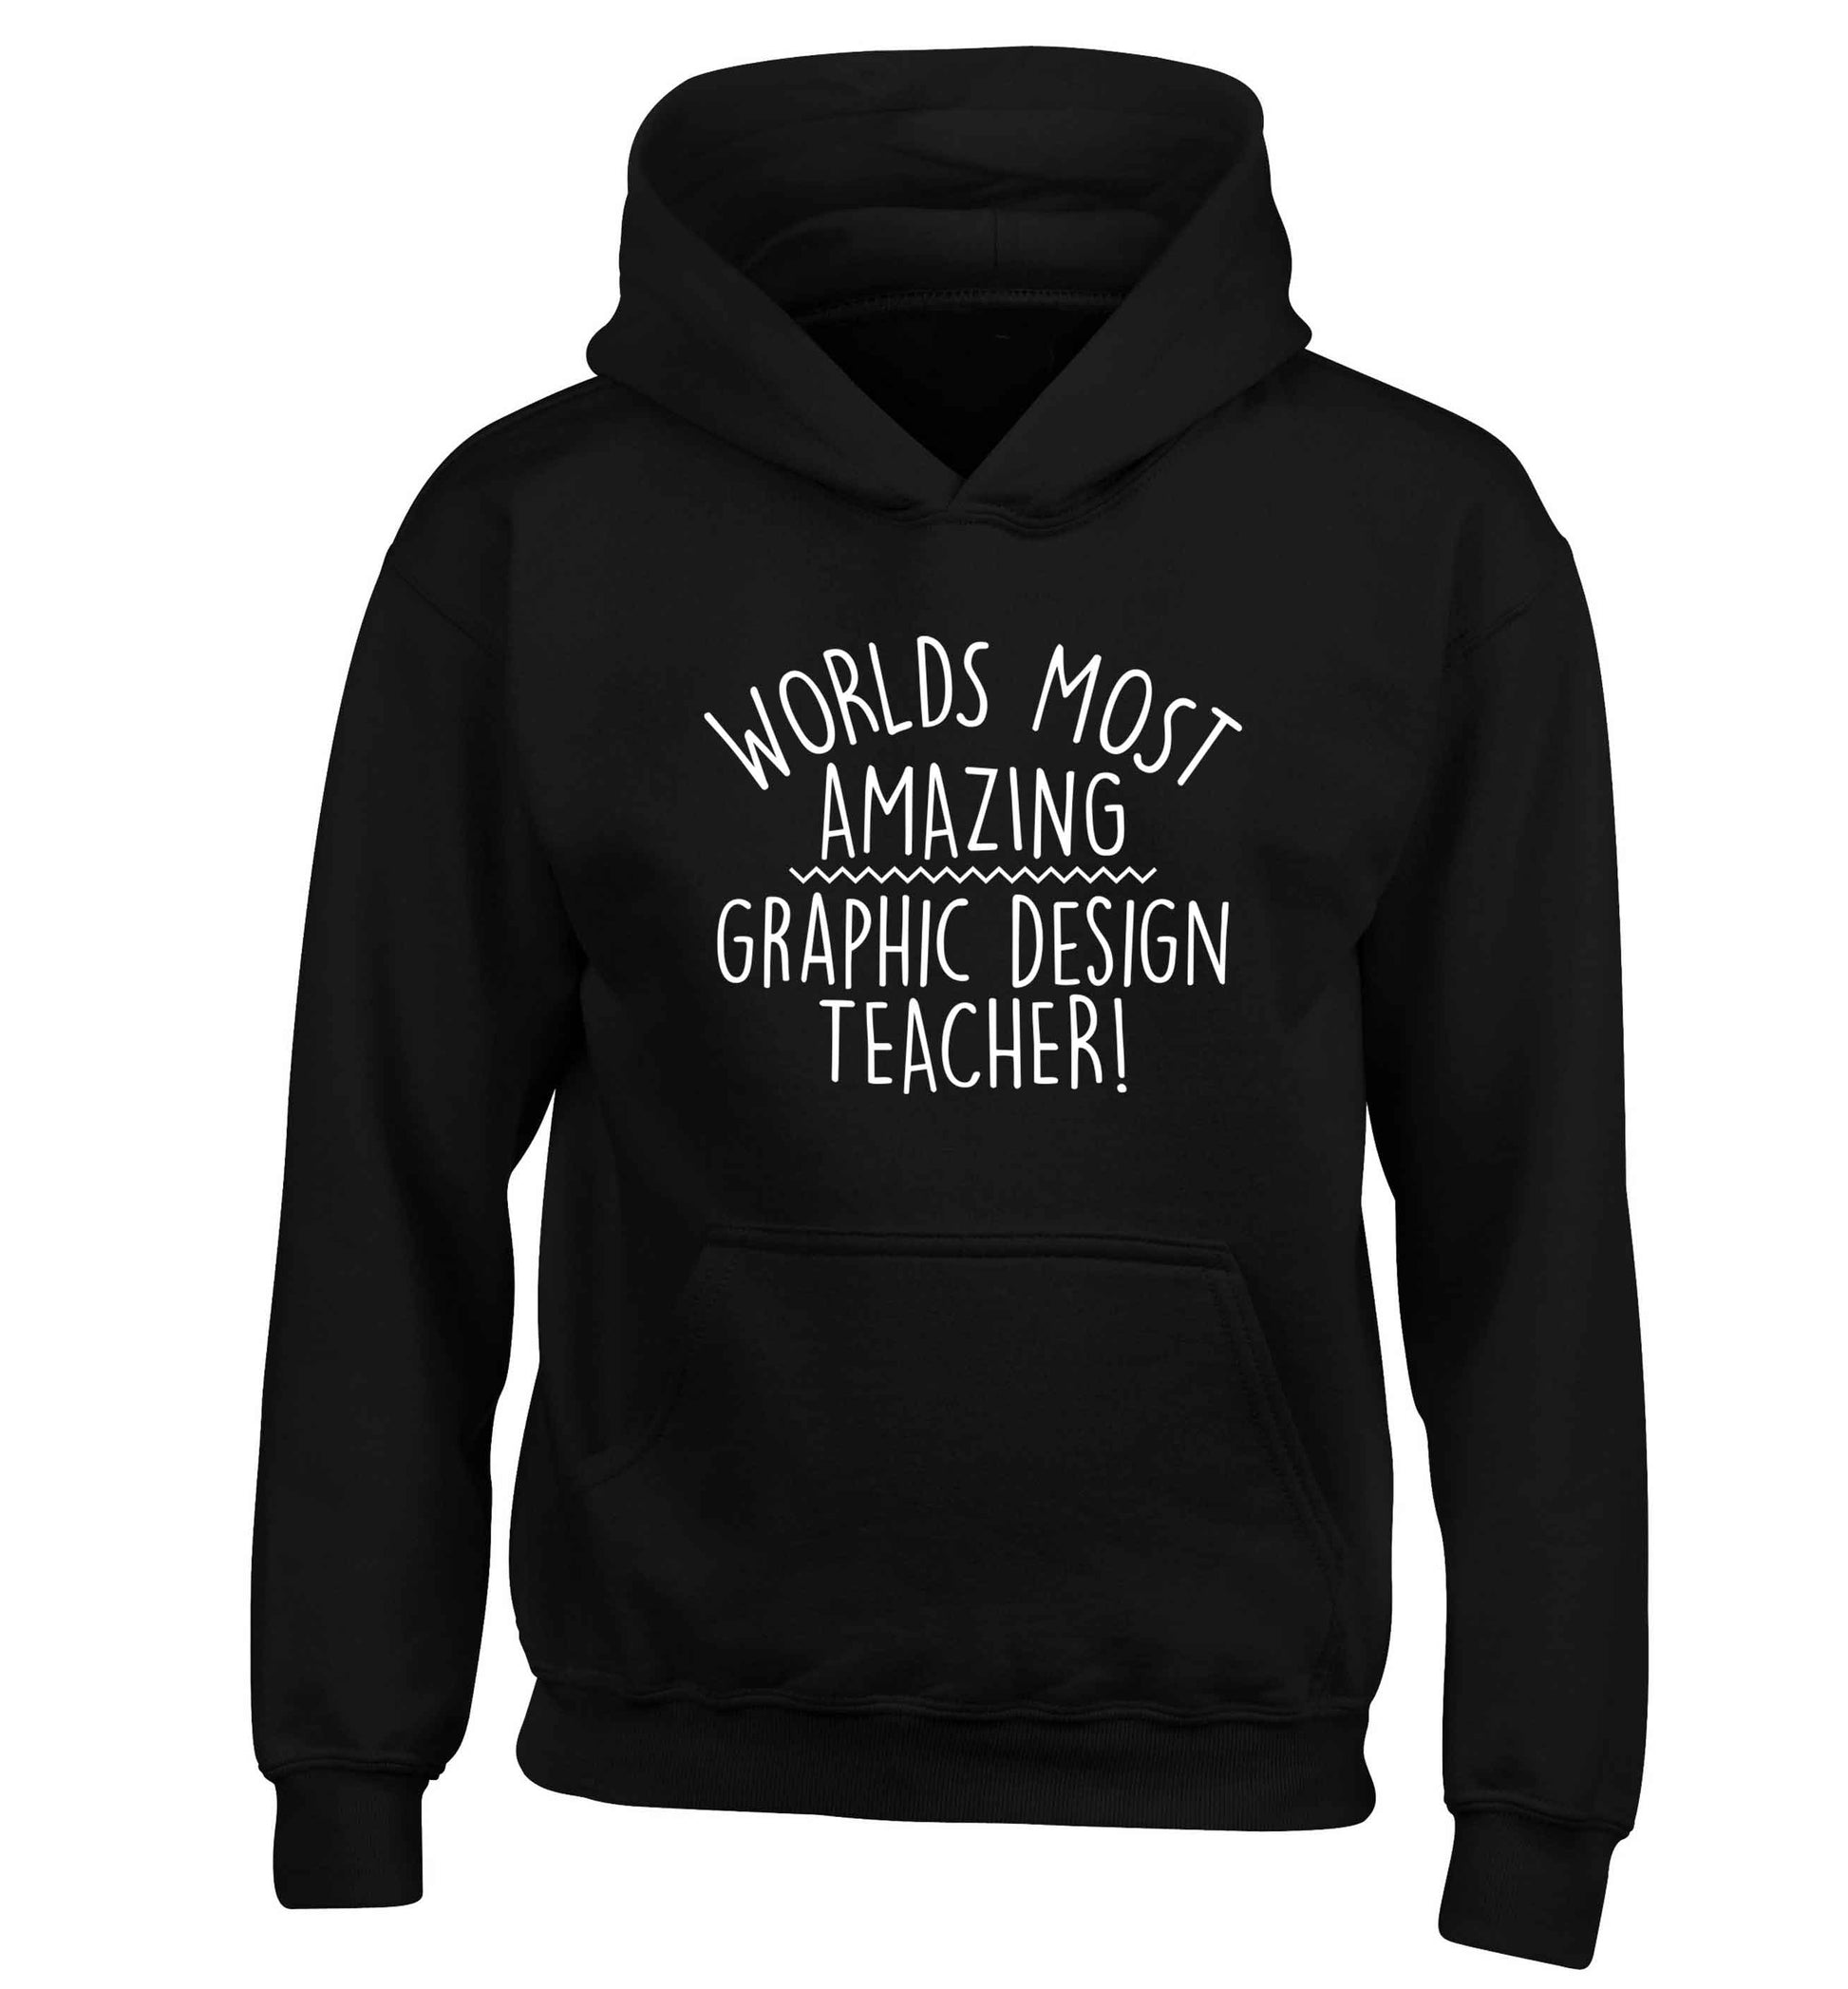 Worlds most amazing graphic design teacher children's black hoodie 12-13 Years